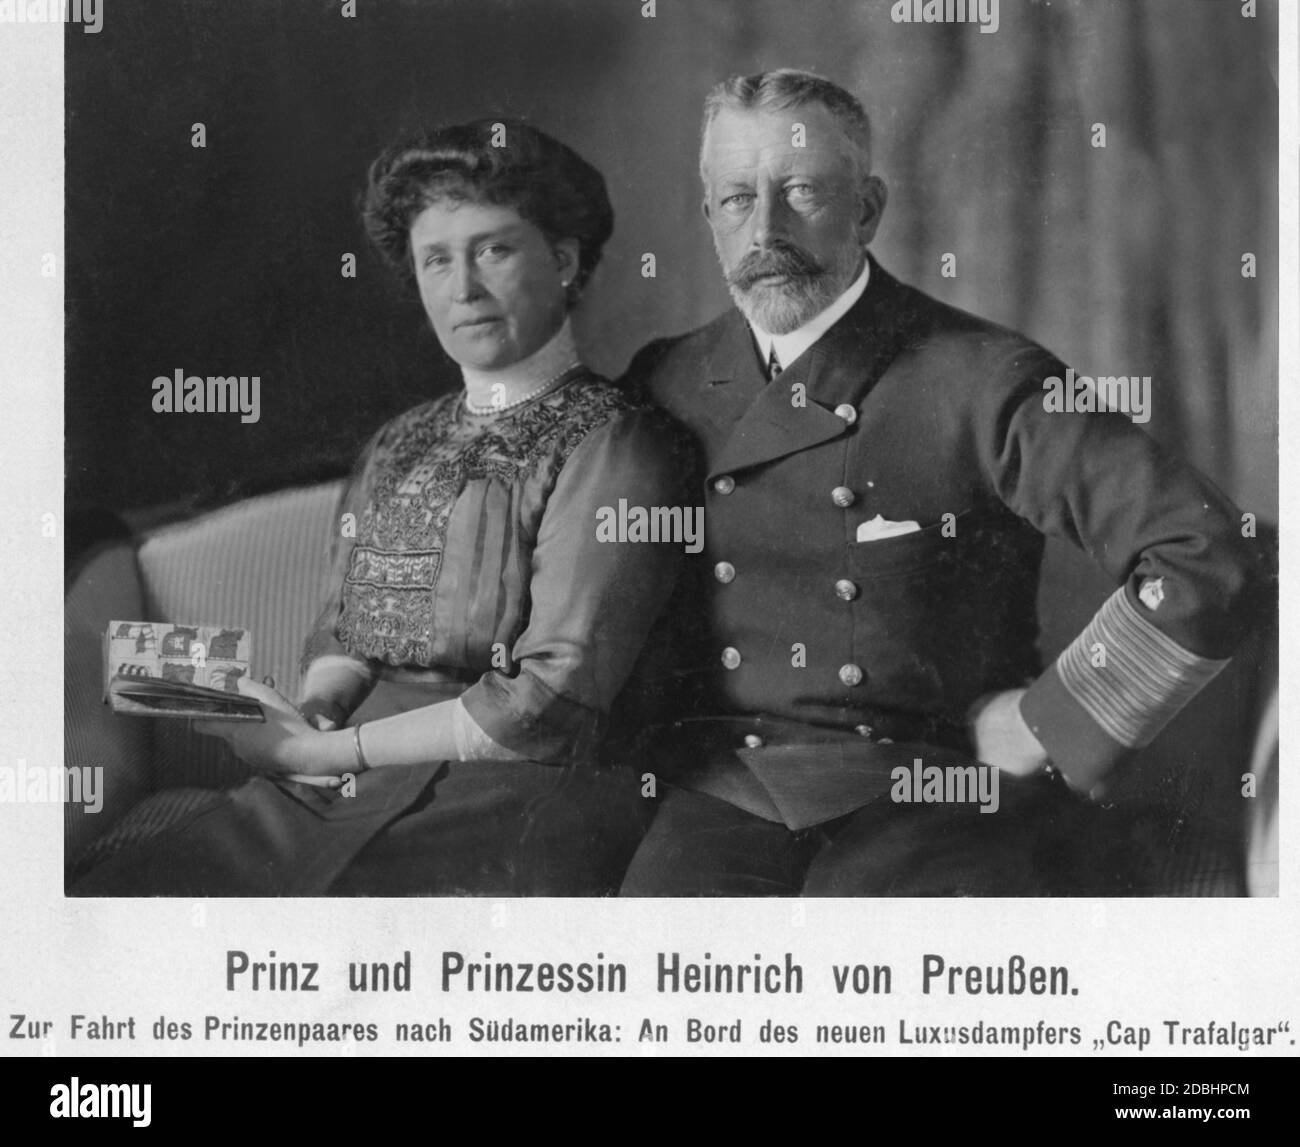 Prinzessin Irene von Preußen (geb. Hessen-Darmstadt) und Prinz Heinrich von Preußen (in der Uniform eines Großadmiral) sind an Bord des Luxusliners SMS Cap Trafalgar. Anfang 1914 machten sie eine Reise nach Südamerika. Stockfoto